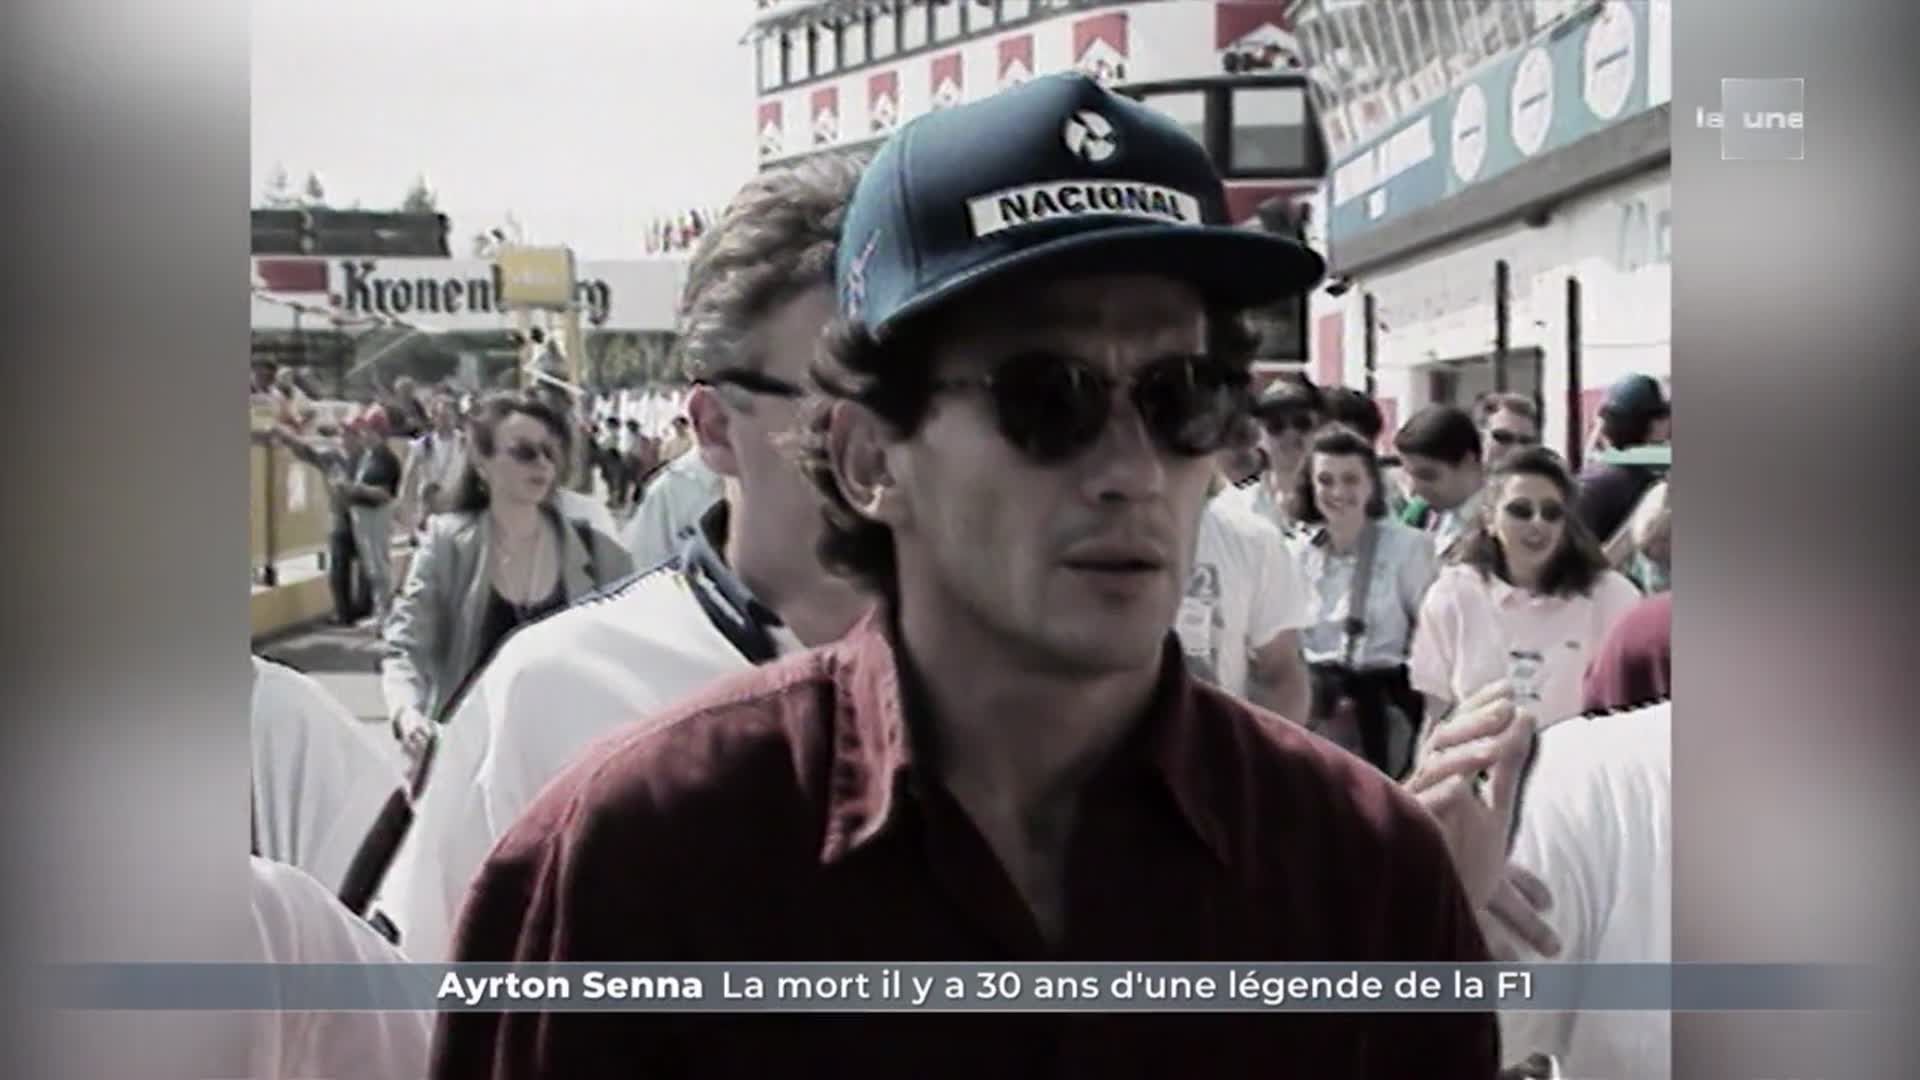 Ayrton Senna / La mort il y a 30 ans dune légende de la F1